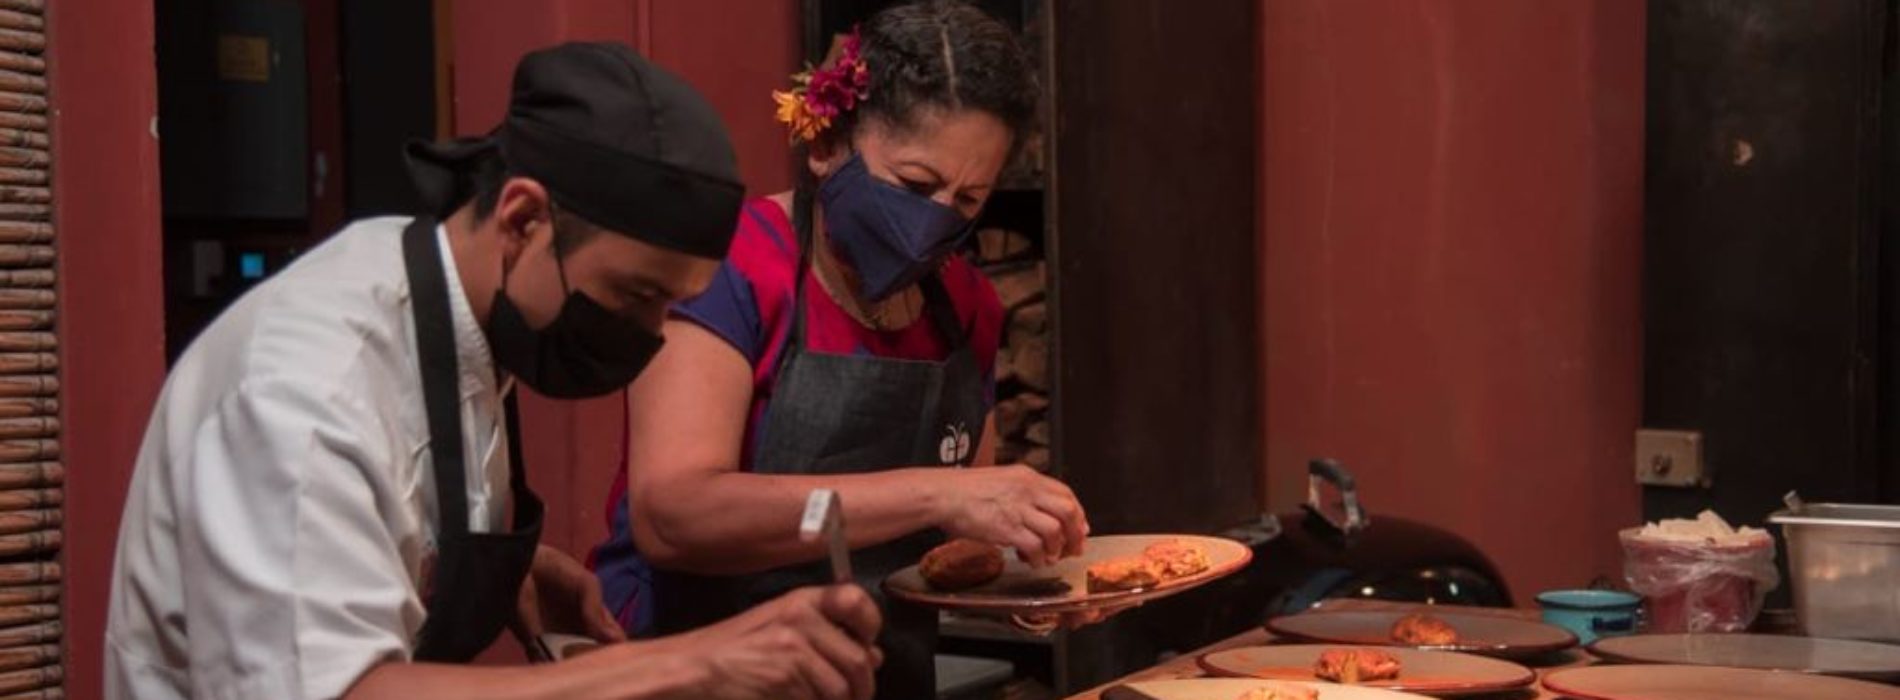 Oaxacalifornia, el festival que exploró nuevas experiencias gastronómicas